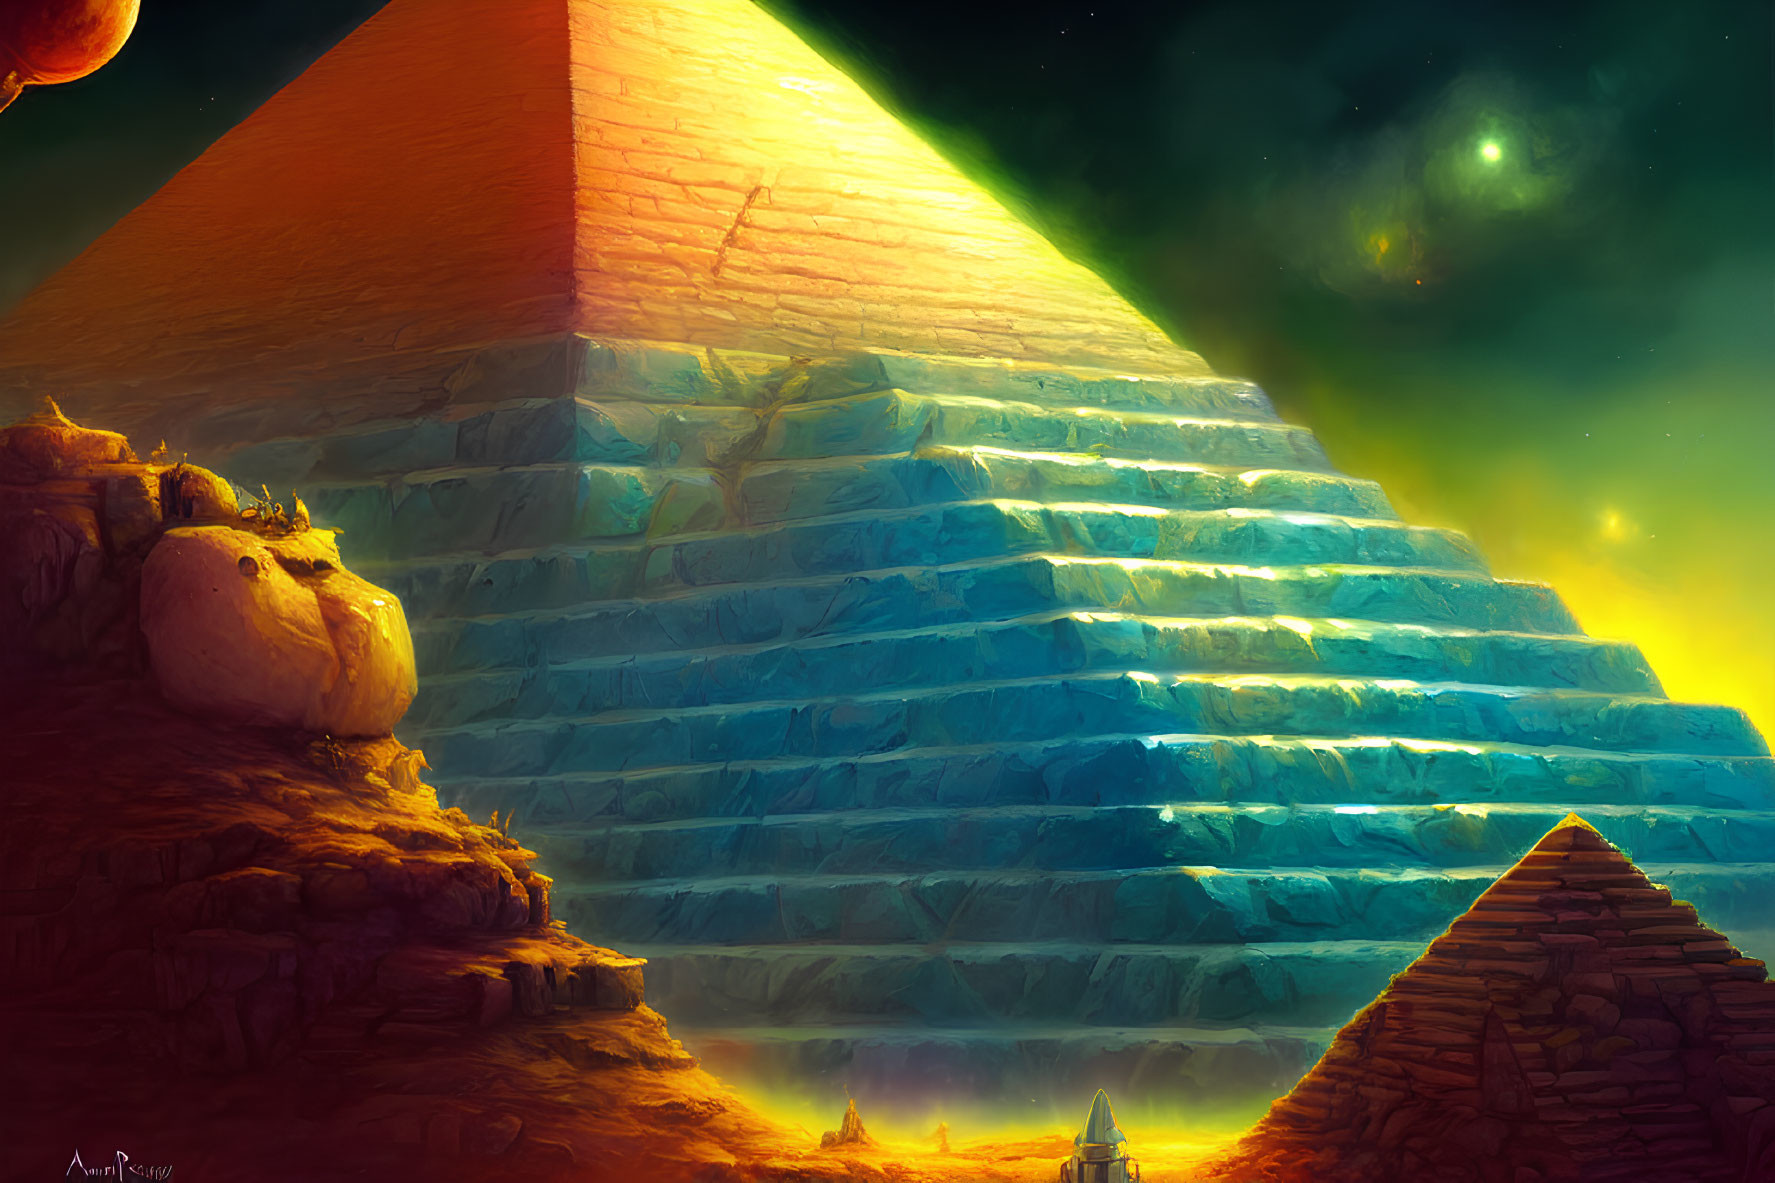 Mystical pyramids under starry sky with celestial glow